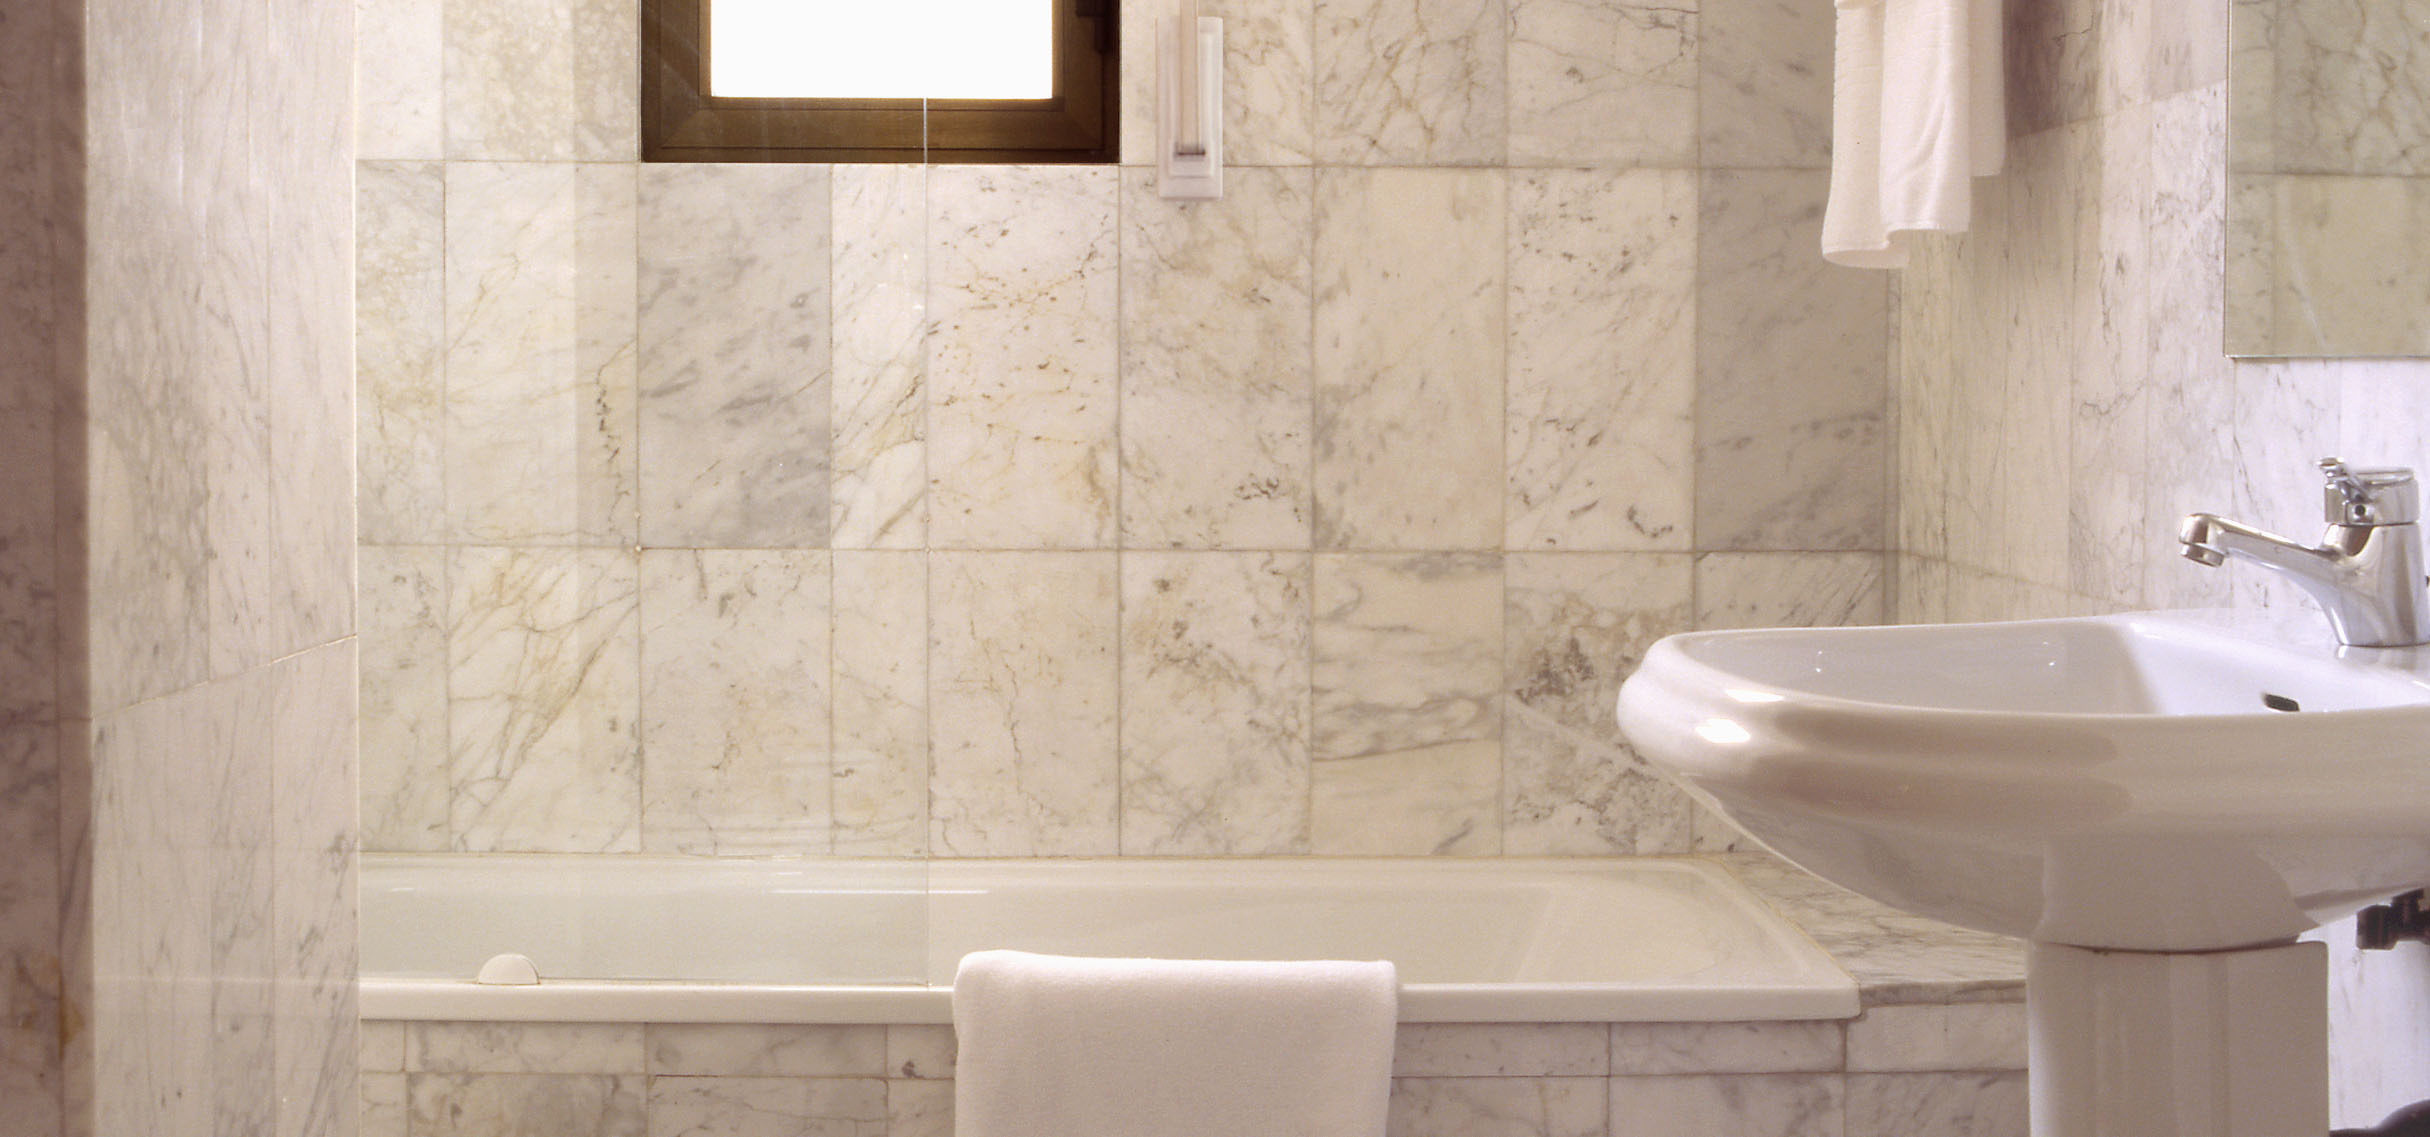 Elegante y distinguido servicio con bañera, suelos y paredes revestidas en mármol y con luz natural